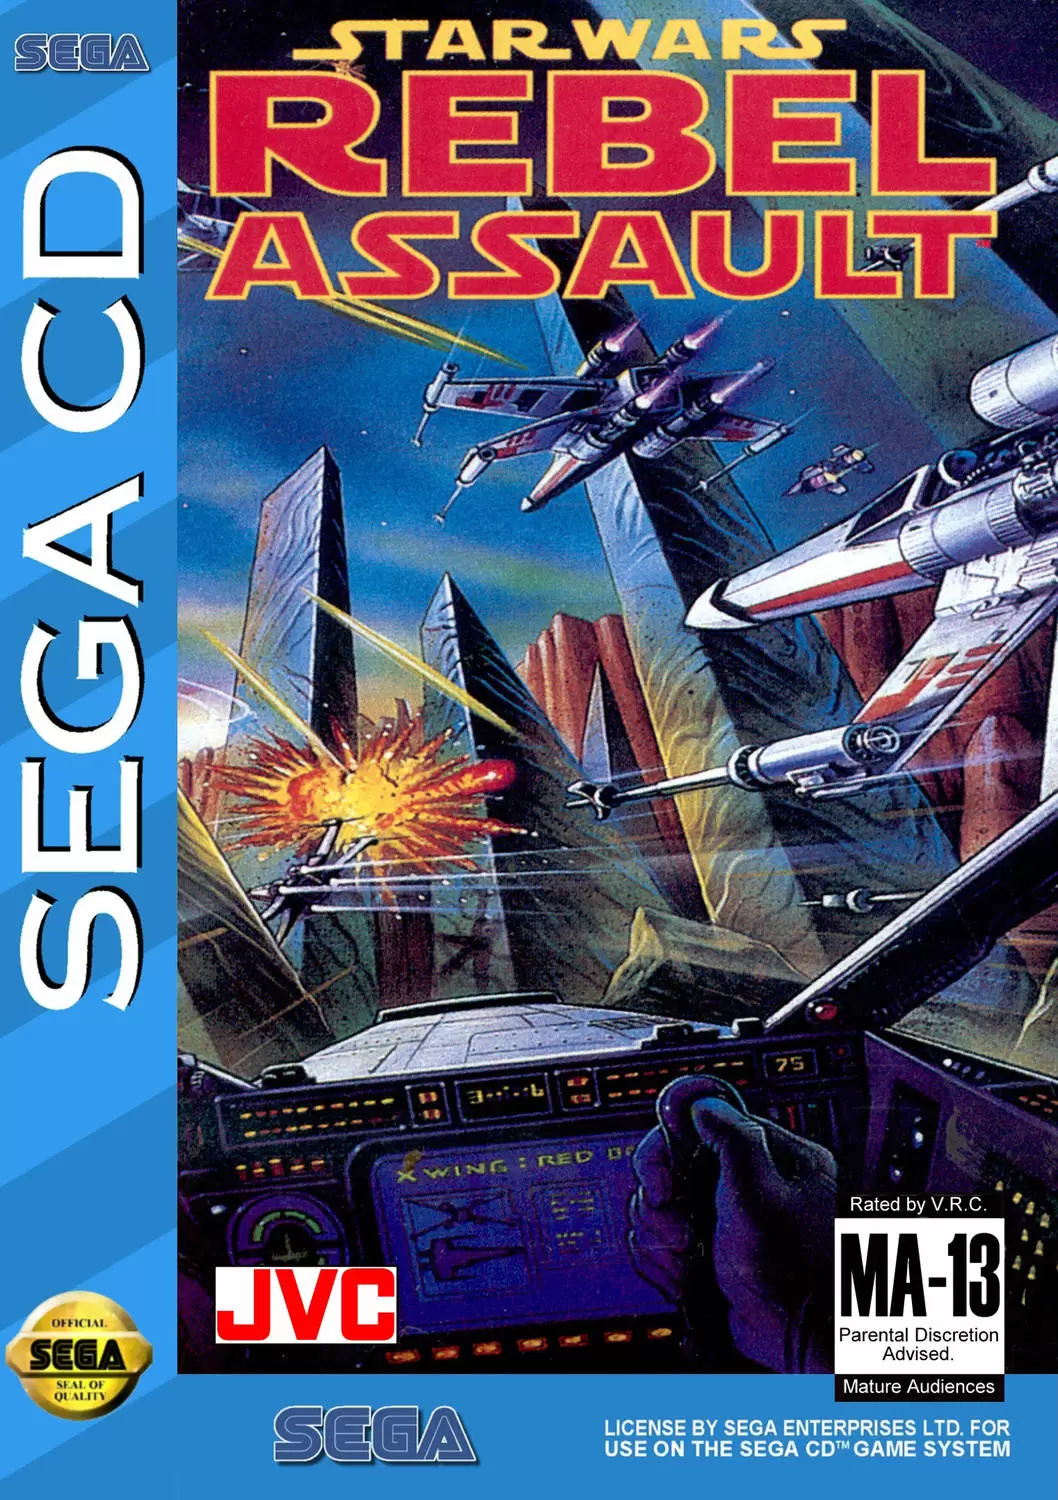 SEGA Mega CD Games - Star Wars: Rebel Assault